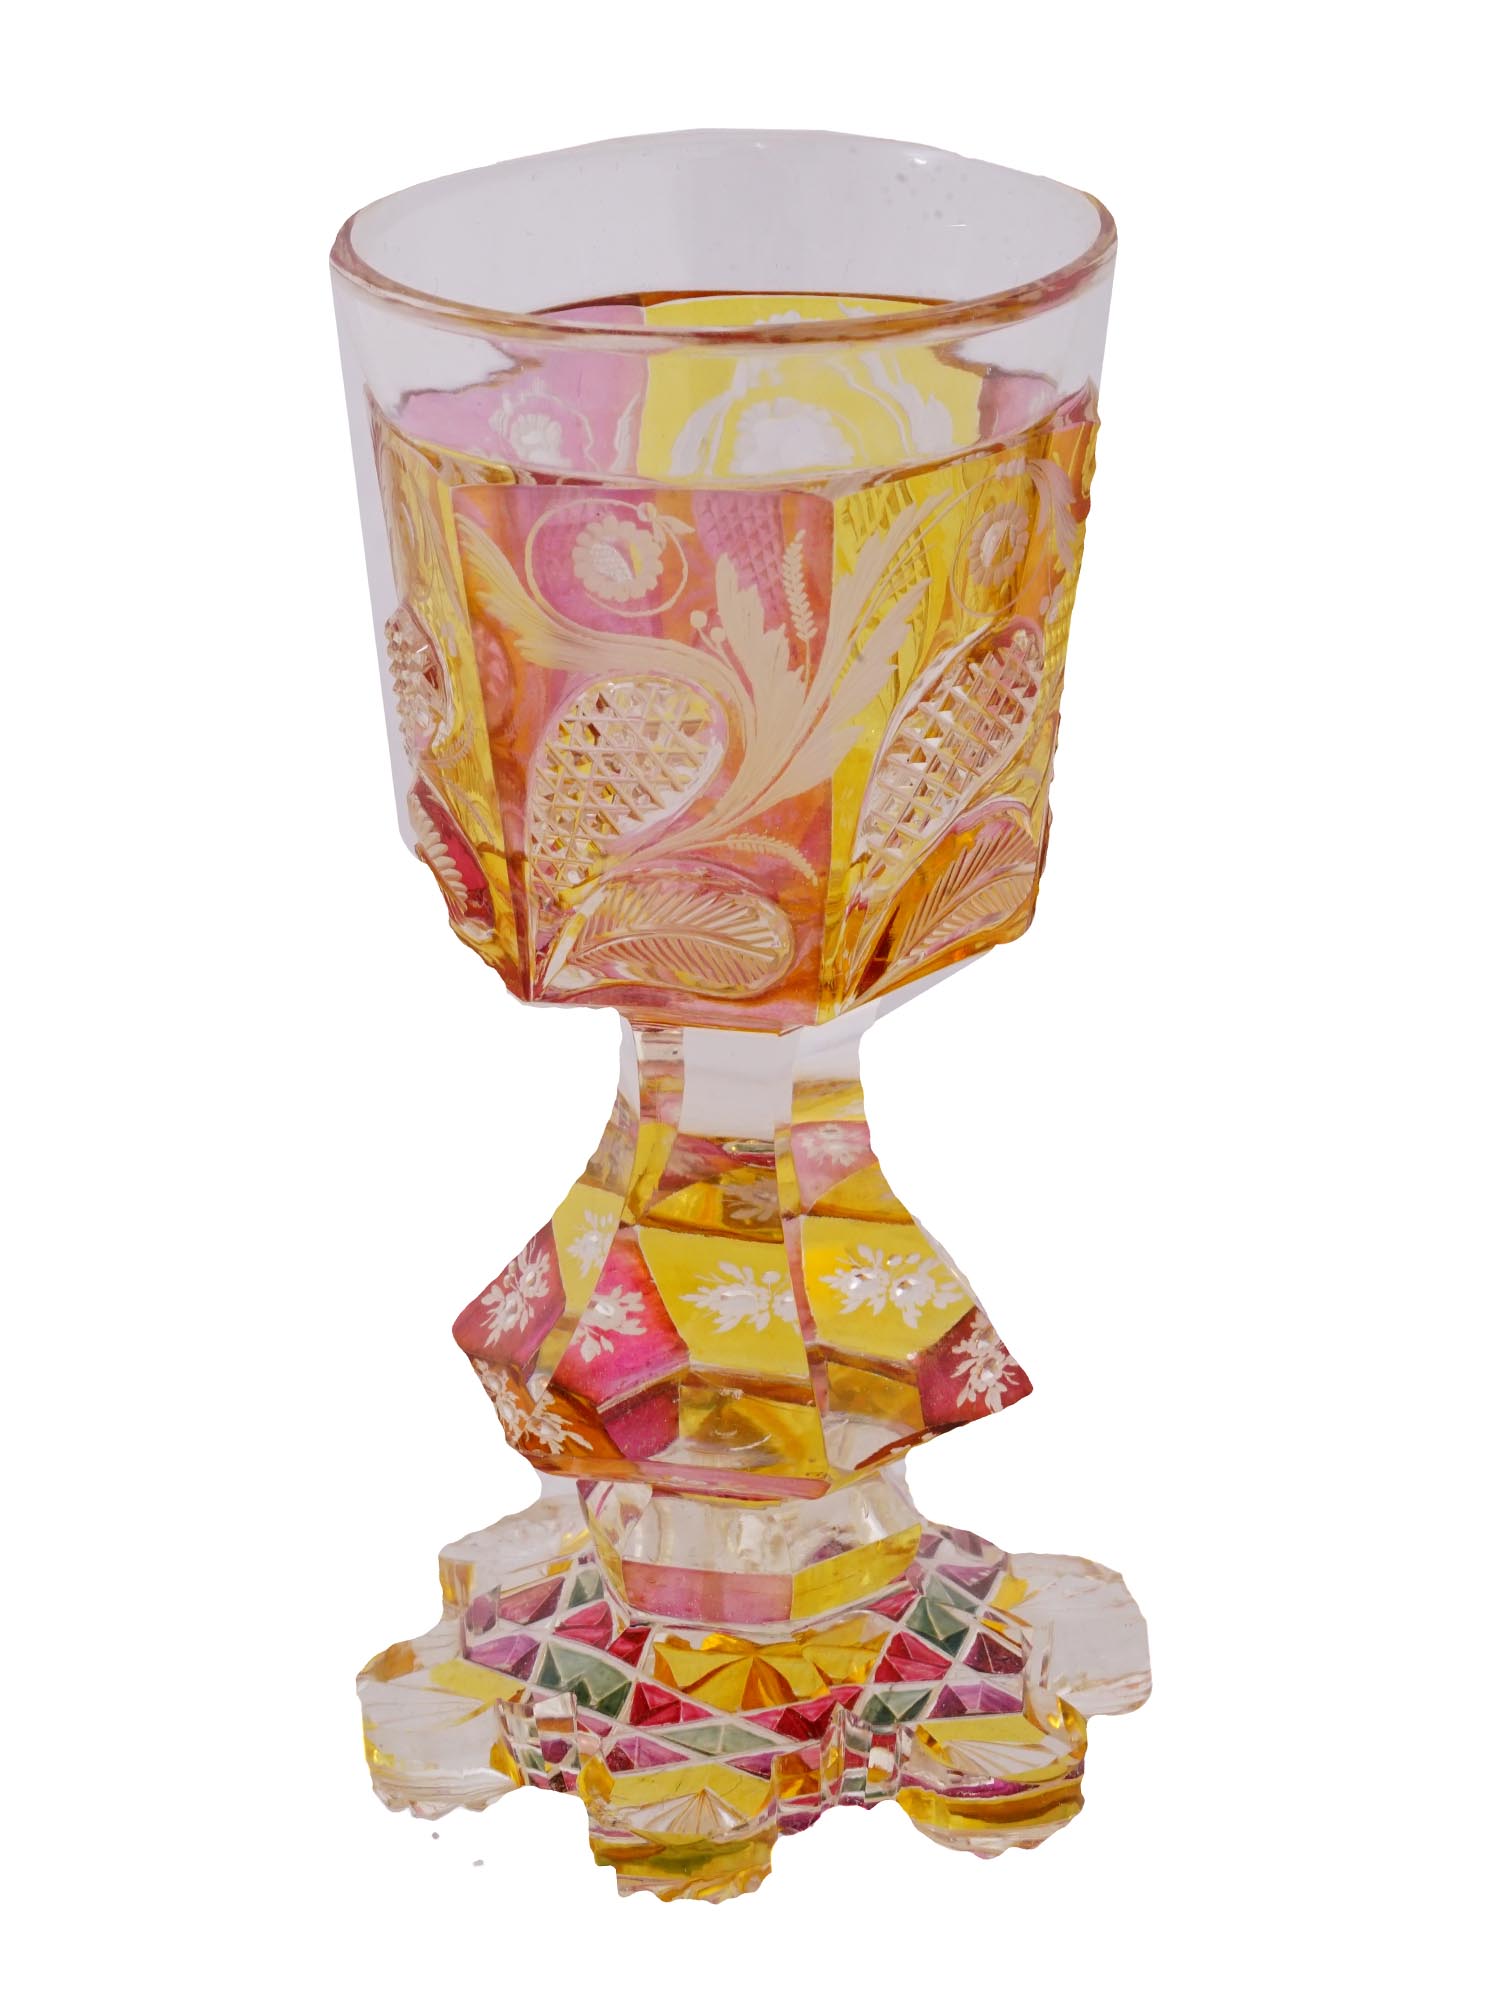 ANTIQUE BOHEMIAN EGERMANN MANNER CUT GLASS GOBLET PIC-1